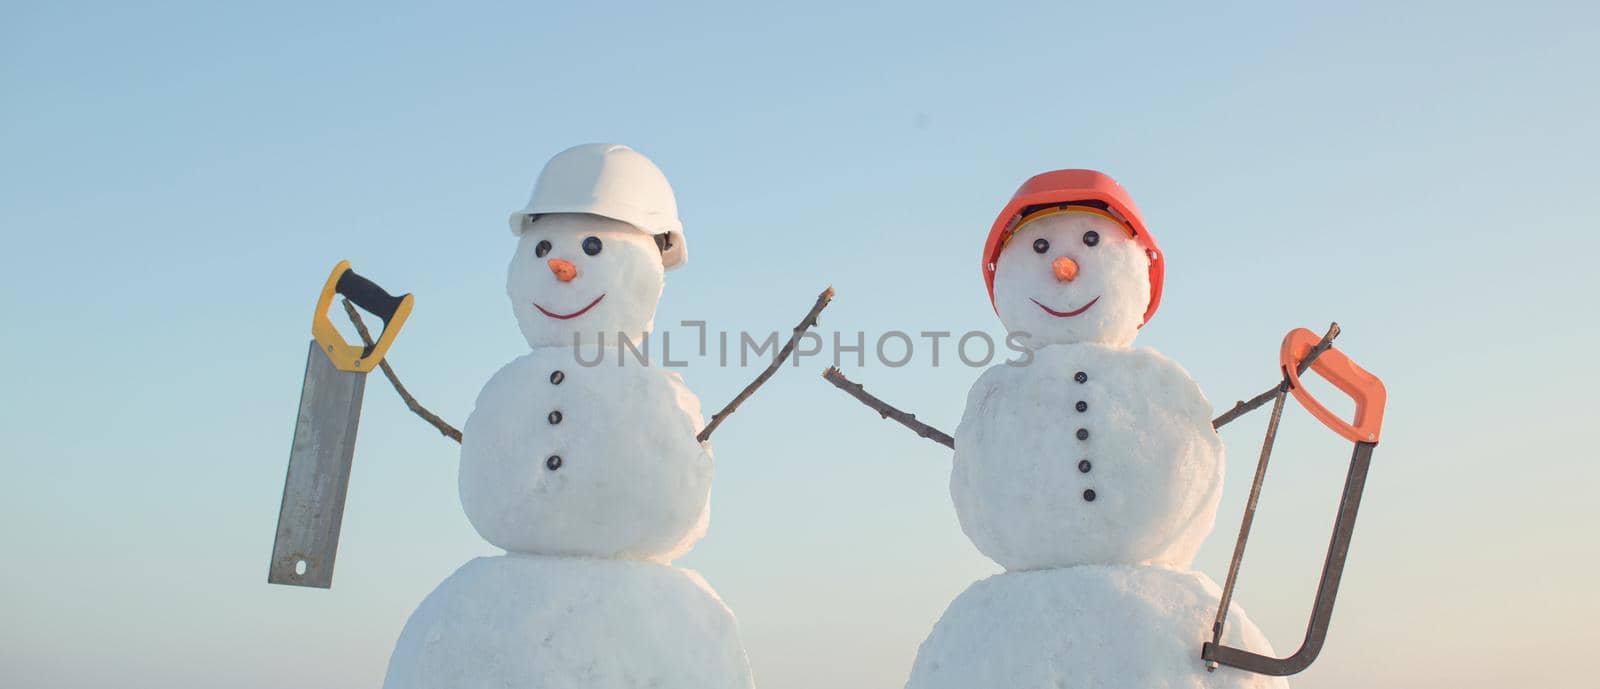 Snowman builder in winter in helmet. Christmas snow man, building and repair work